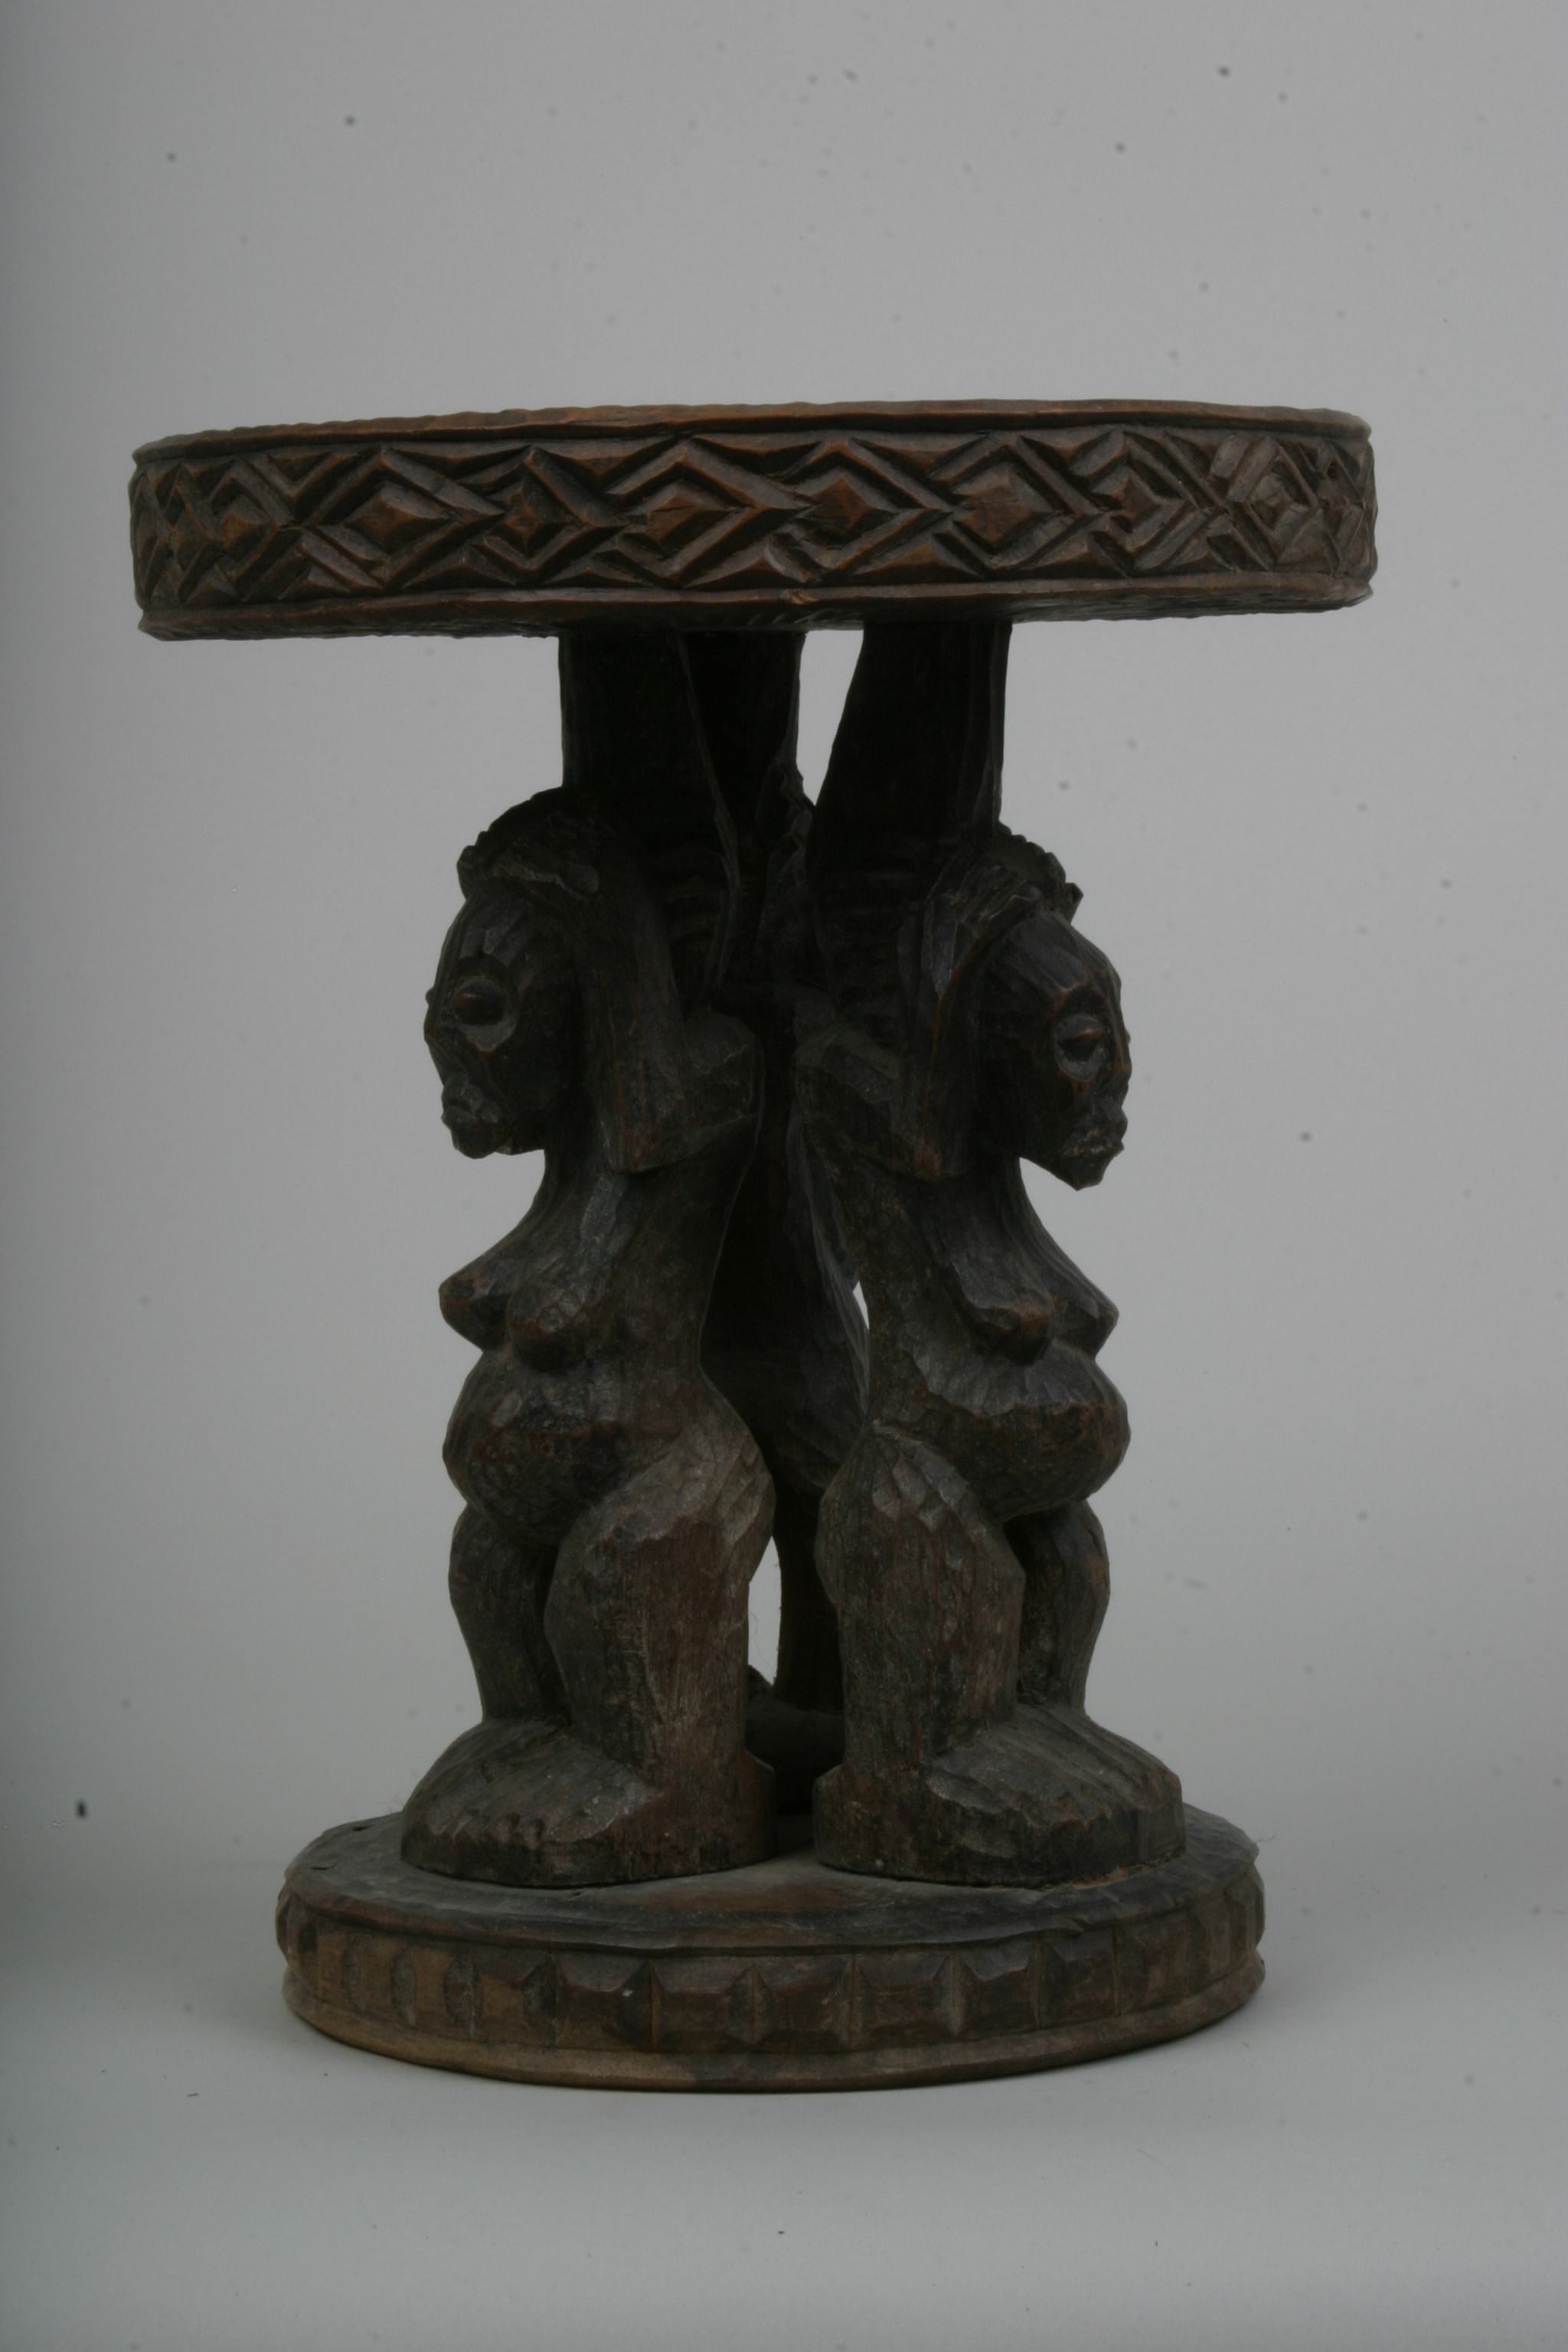 Bamun (Tabouret), d`afrique : cameroun, statuette Bamun (Tabouret), masque ancien africain Bamun (Tabouret), art du cameroun - Art Africain, collection privées Belgique. Statue africaine de la tribu des Bamun (Tabouret), provenant du cameroun, 790/428.Siège Bamoun h.30cm..trois personnes se tenant debout et soutenant le plateau du haut avec les bras tendus..bois brut.1ère moitié du 20eme sc(Nafaya). art,culture,masque,statue,statuette,pot,ivoire,exposition,expo,masque original,masques,statues,statuettes,pots,expositions,expo,masques originaux,collectionneur d`art,art africain,culture africaine,masque africain,statue africaine,statuette africaine,pot africain,ivoire africain,exposition africain,expo africain,masque origina africainl,masques africains,statues africaines,statuettes africaines,pots africains,expositions africaines,expo africaines,masques originaux  africains,collectionneur d`art africain